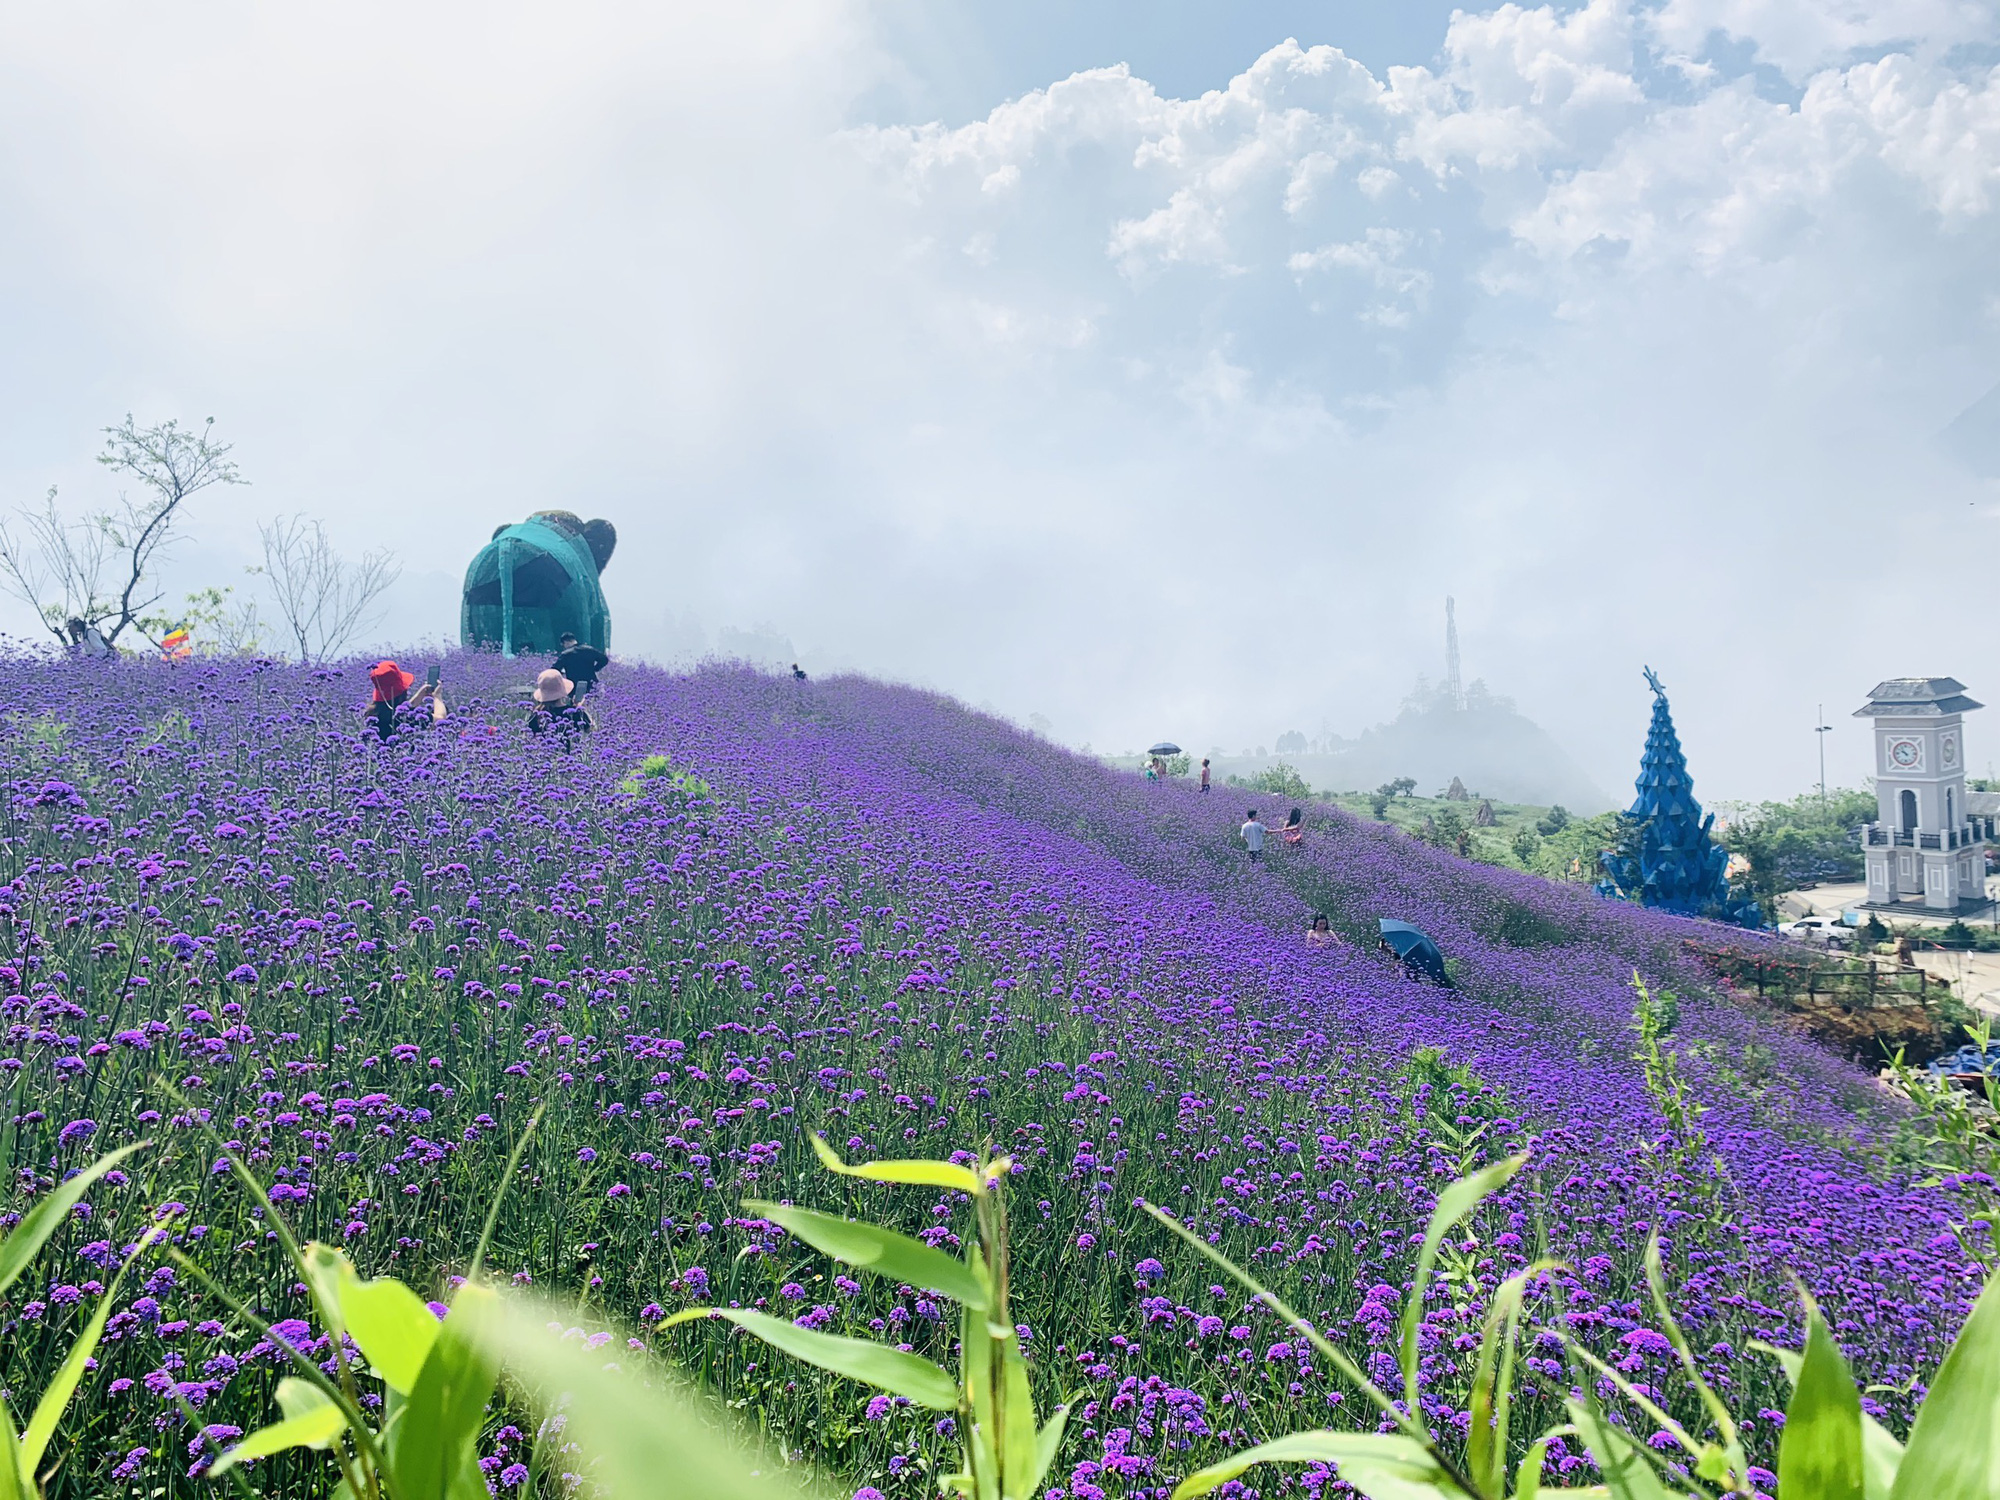 Cánh đồng hoa oải hương là một trong những điểm đến yêu thích của những người yêu thiên nhiên. Hãy cùng chiêm ngưỡng hình ảnh với màu tím thanh lịch của cánh hoa oải hương và không khí trong lành tại cánh đồng nổi tiếng này.